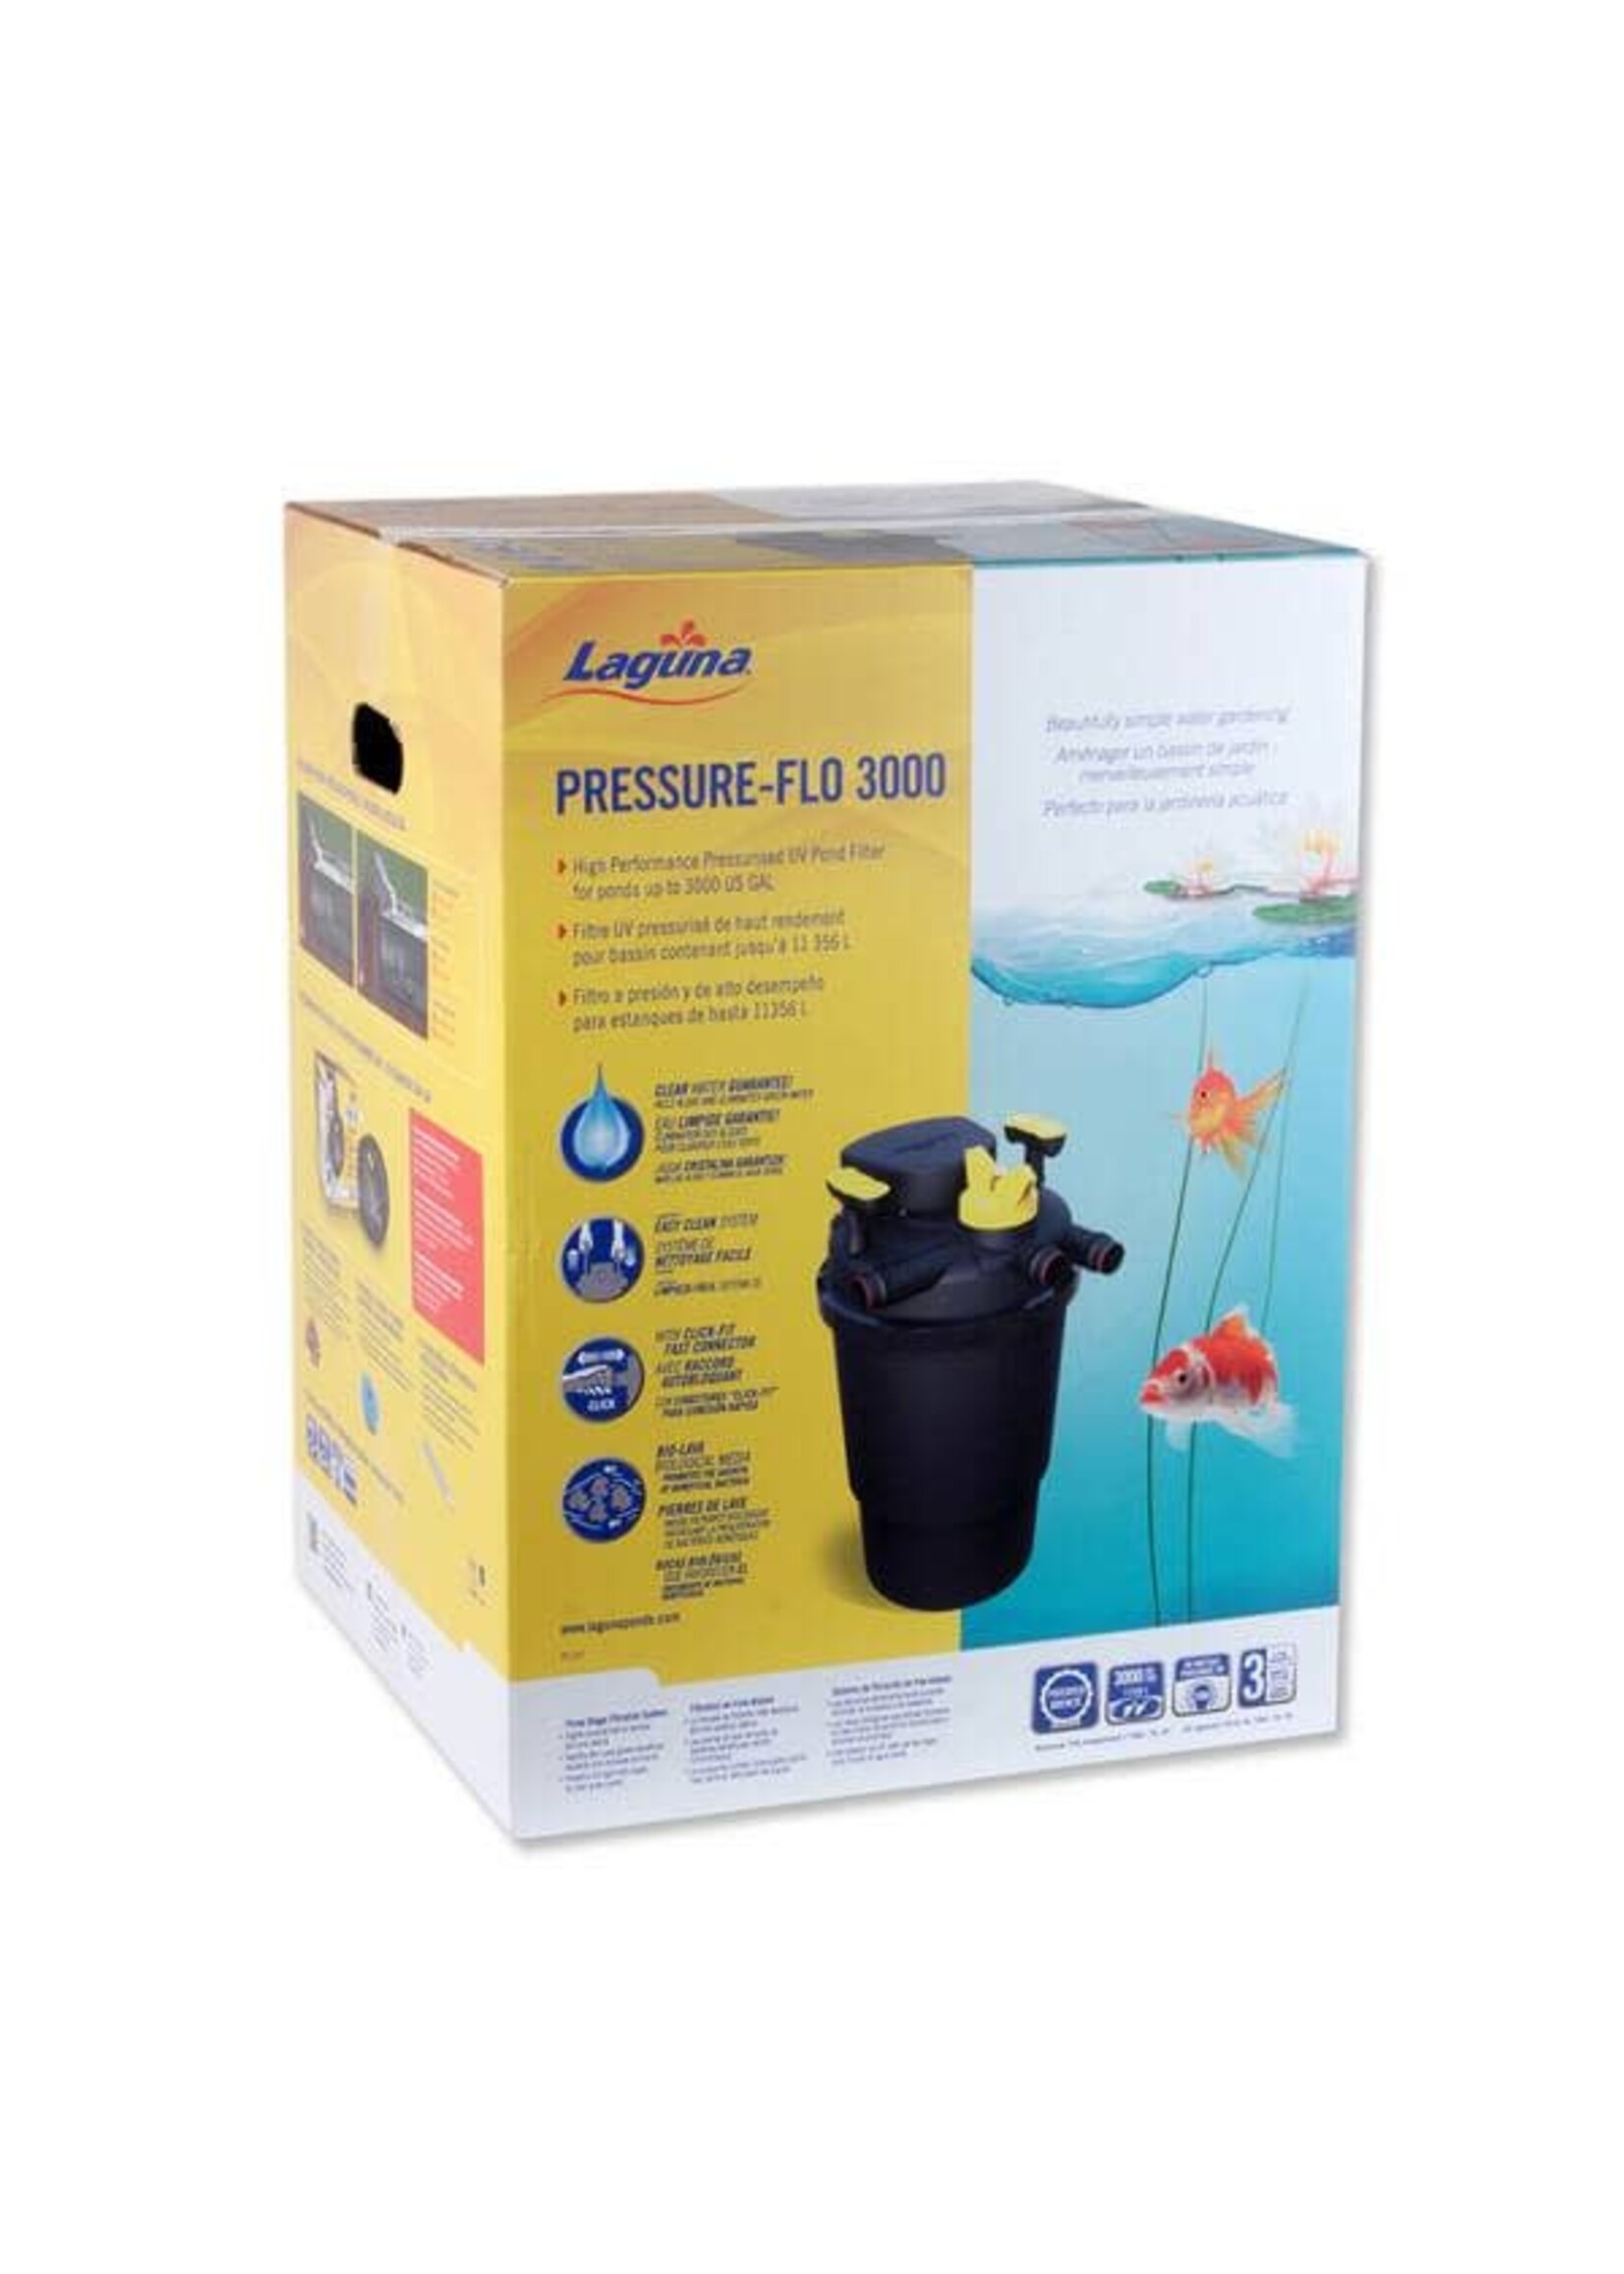 Laguna PRESSURE-FLO 3000 UVC